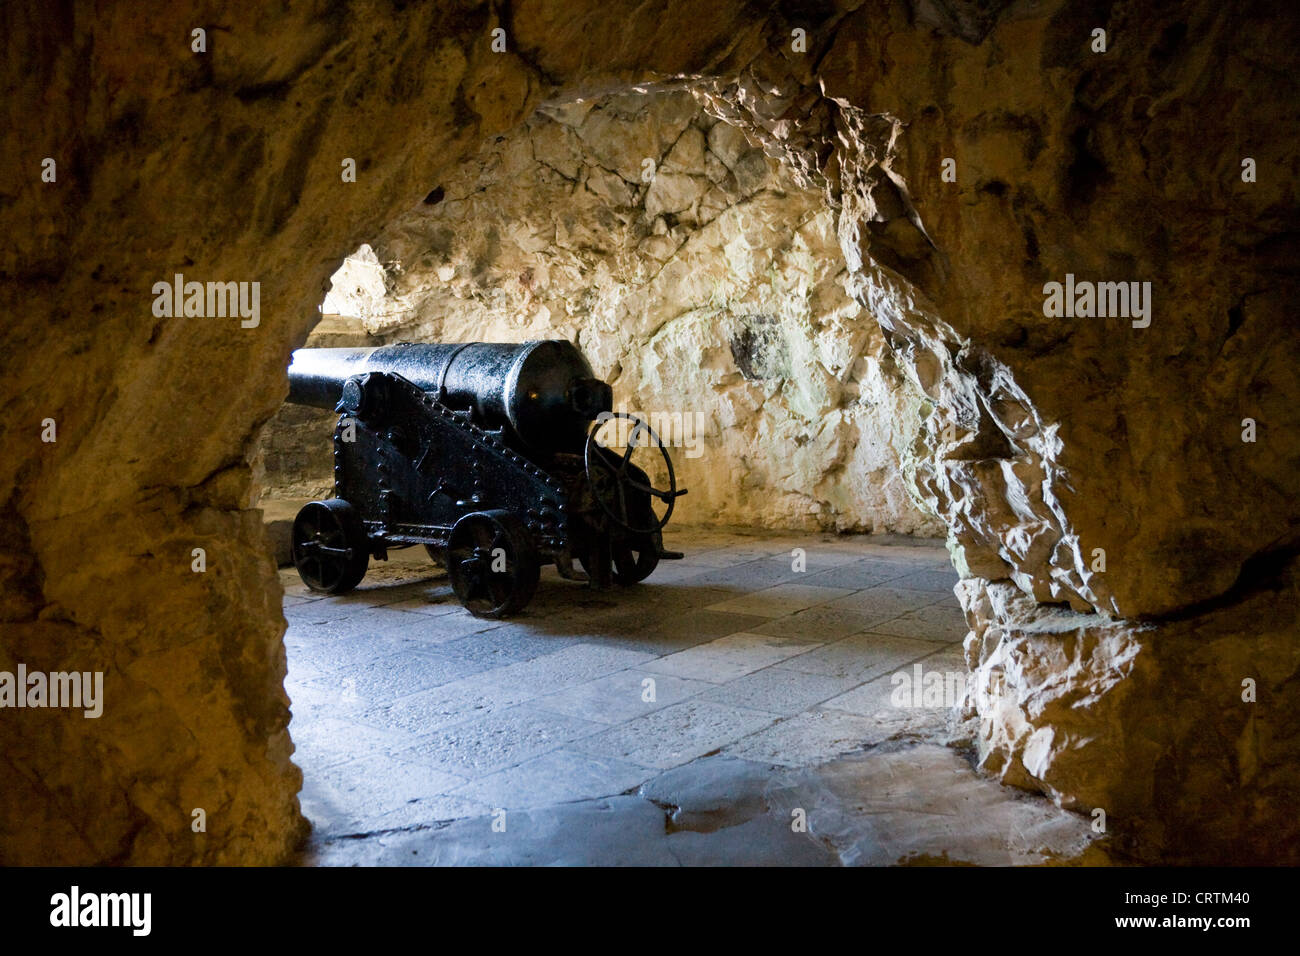 Historische britische / englische Kanone gun Stellung innerhalb der Galerien / die große Belagerung Tunnel auf den Felsen von Gibraltar. Stockfoto